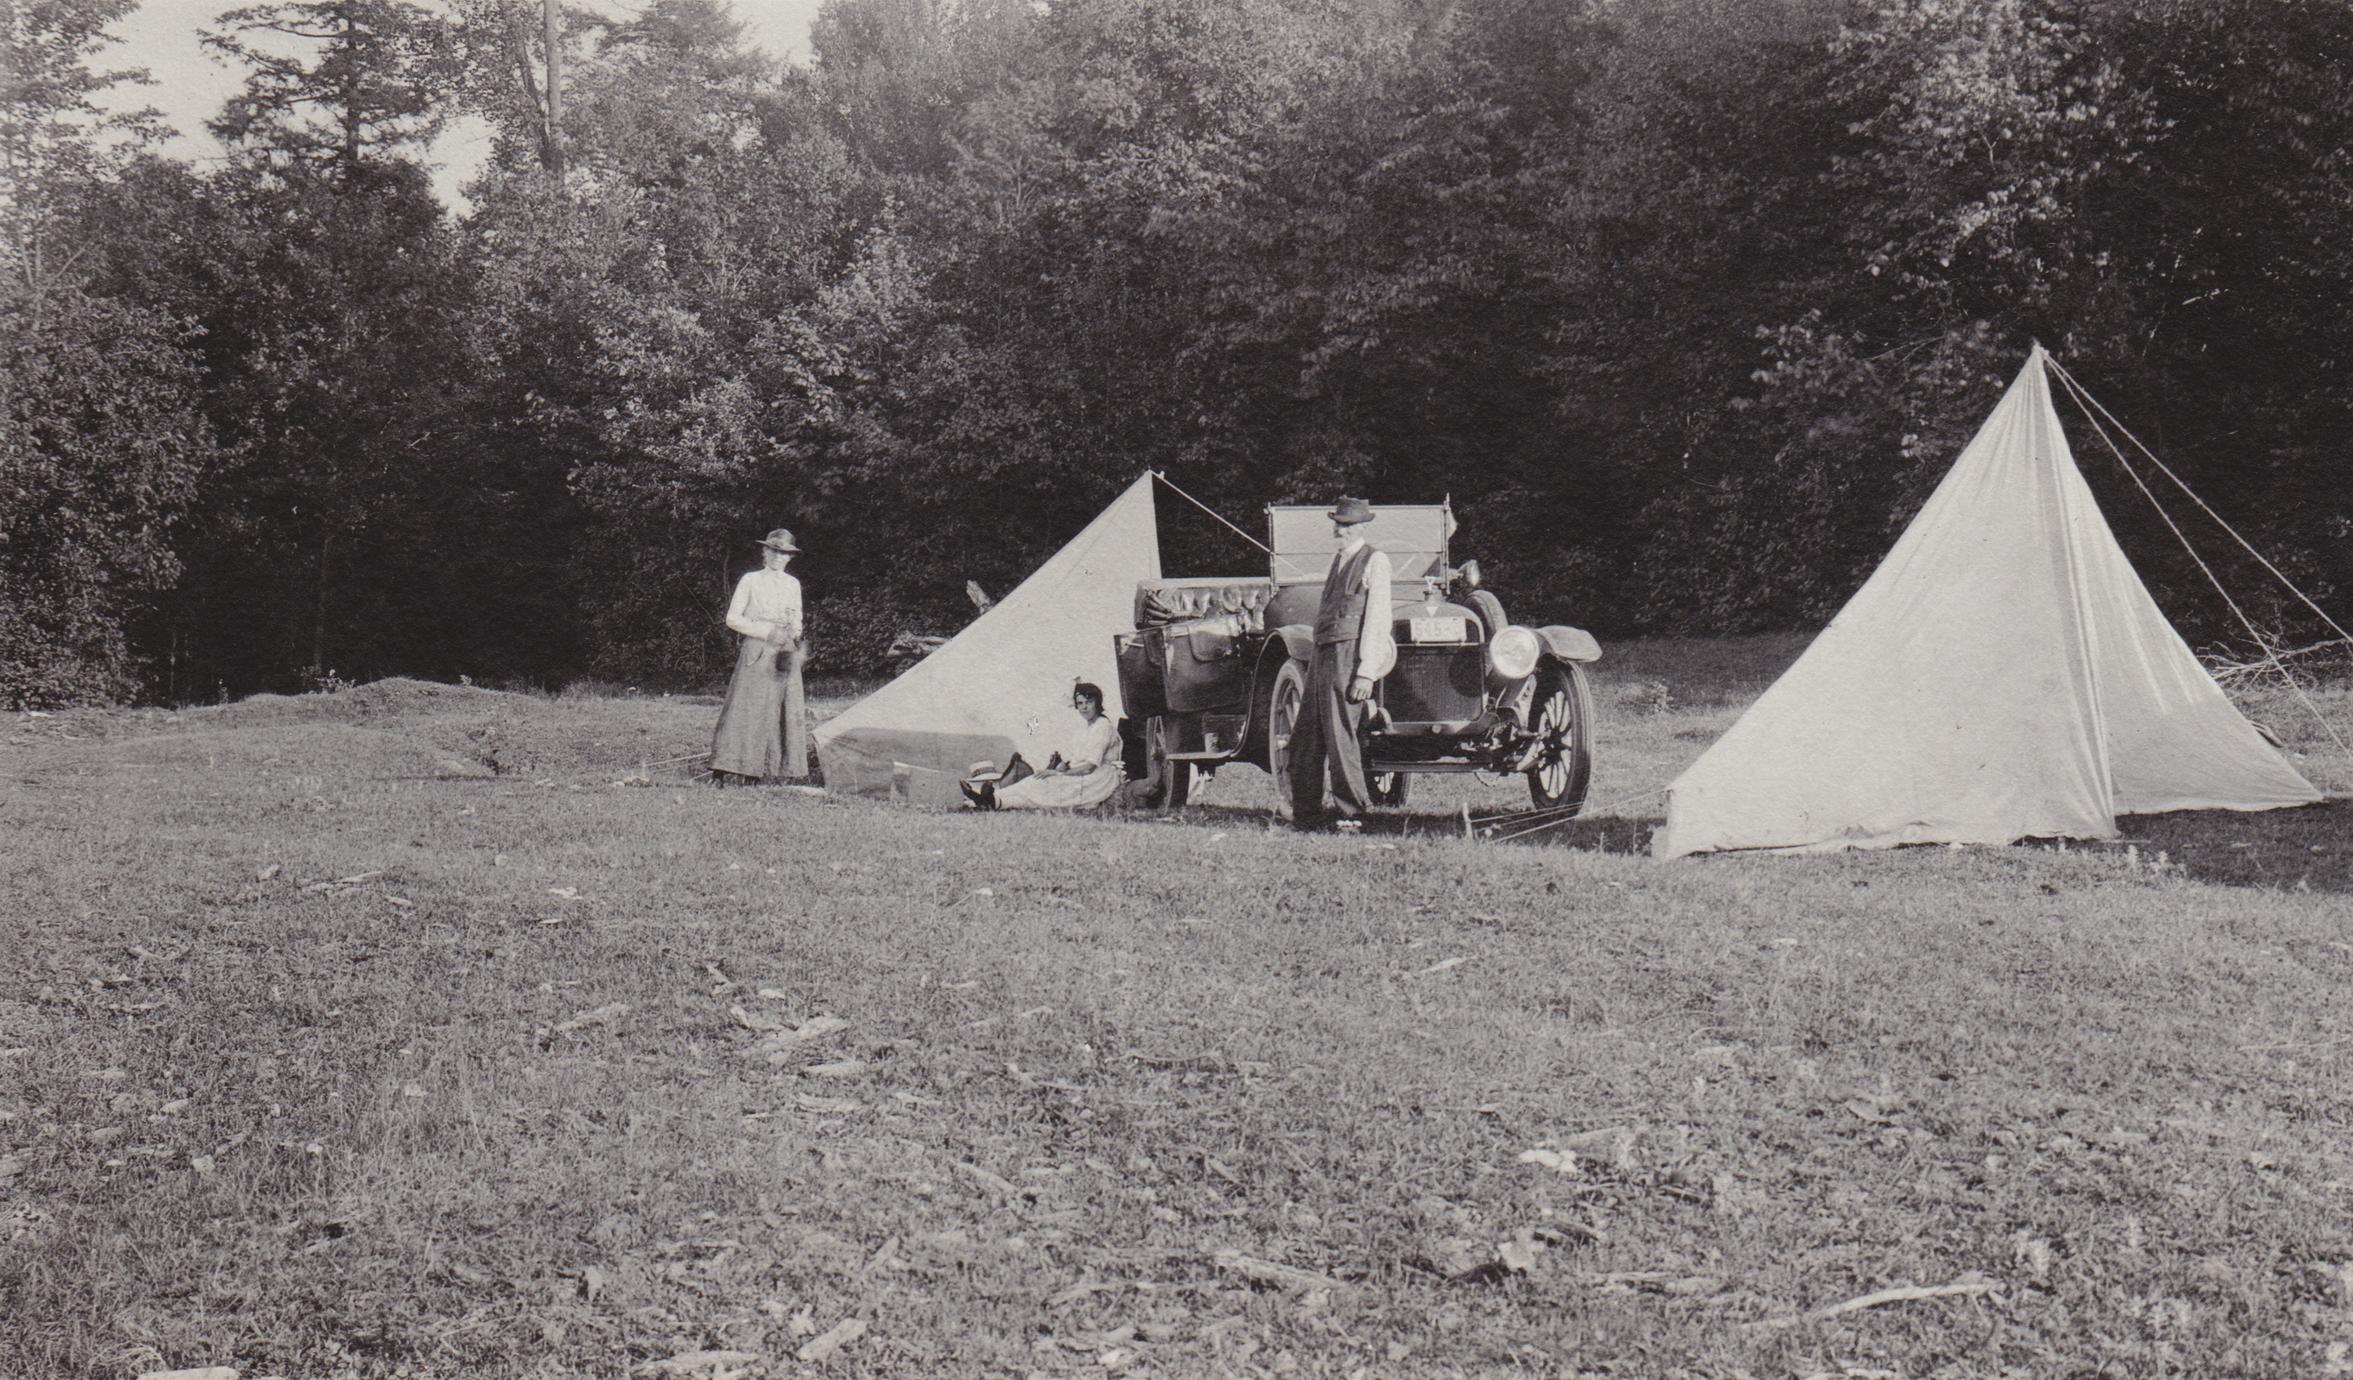 Camp at Rib River ford